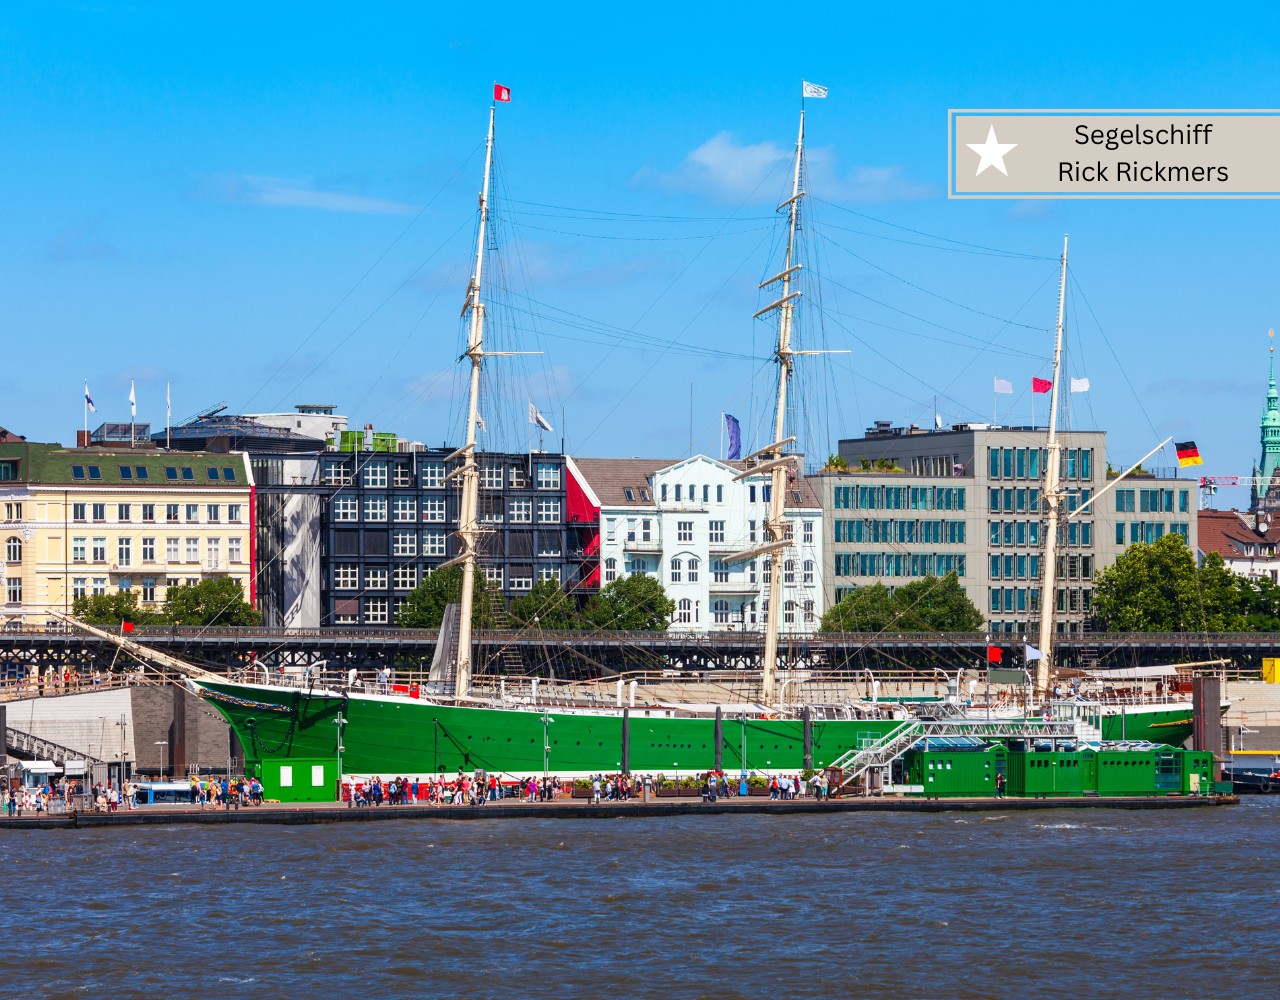 Aktivitäten mit Kindern in Hamburg - Segelschiff Rickmer Rickmers